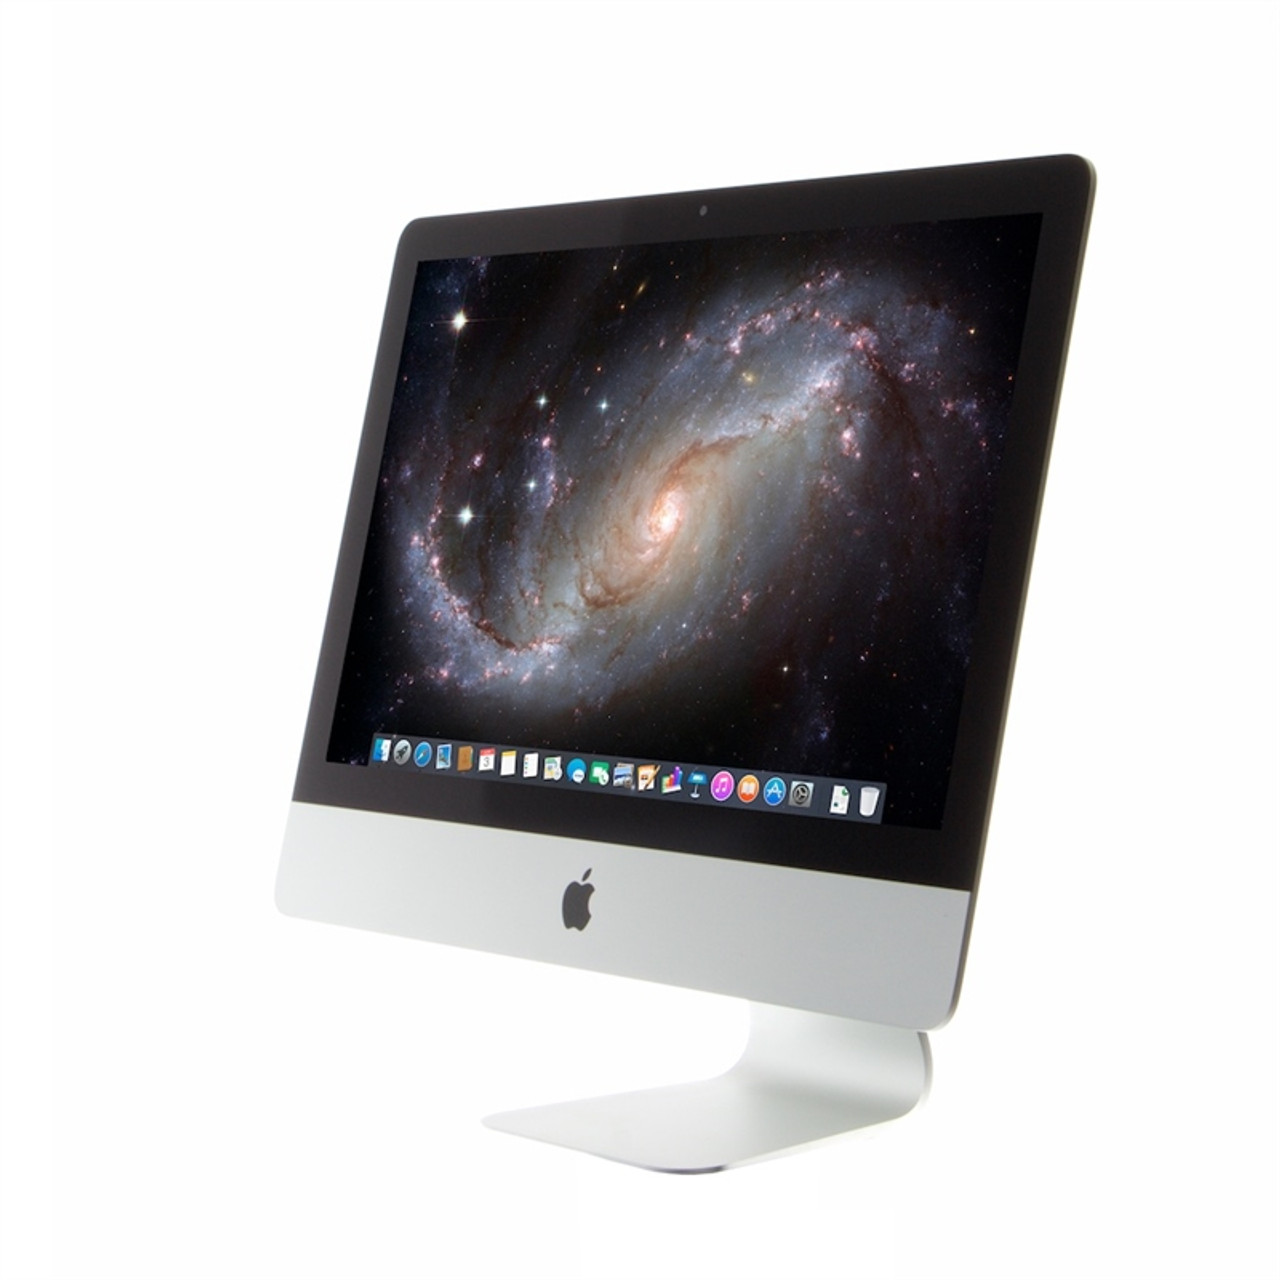 USB Port*: Apple iMac 21.5-inch 2.7GHz Quad-core i5 (Late 2012) MD093LL/A